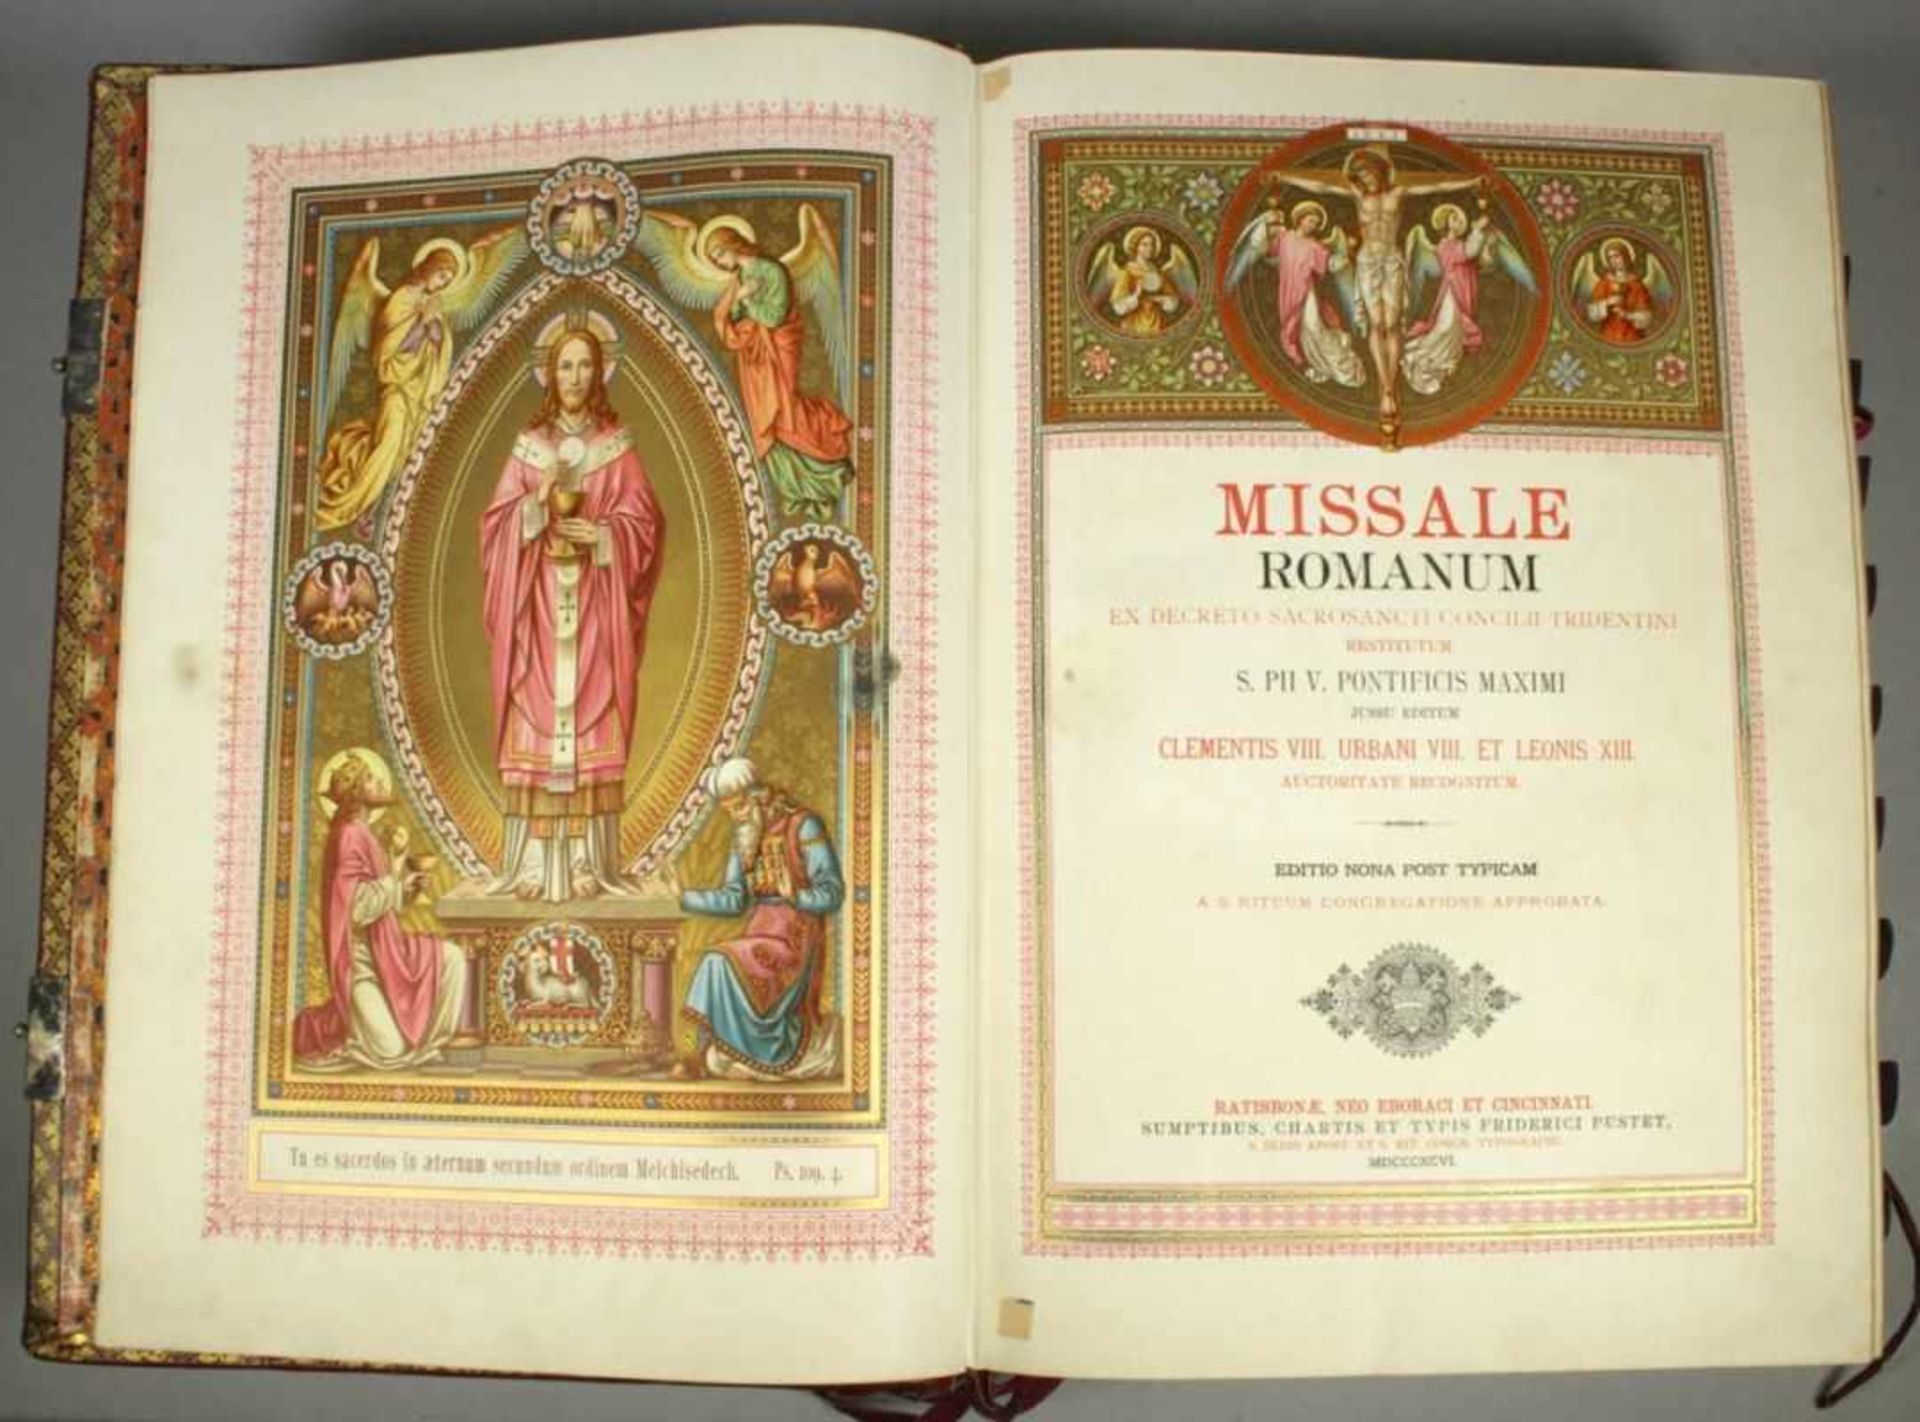 Buch, "Missale Romanum", Verlag Friedrich Pustet, 1896, geprägter Einband, guterErhaltungszustand - Bild 2 aus 2